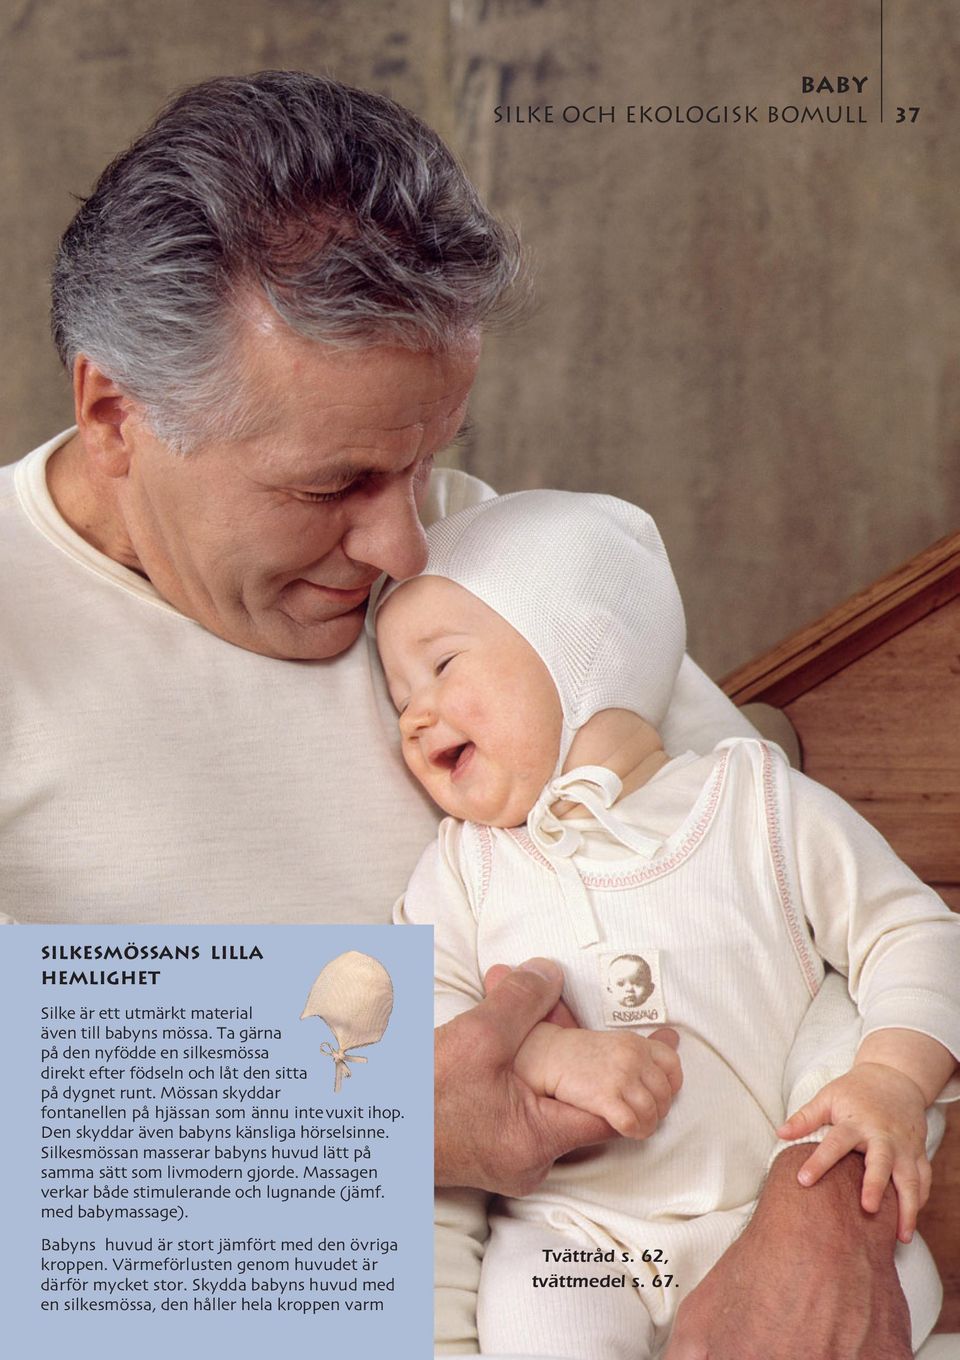 Den skyddar även babyns känsliga hörselsinne. Silkesmössan masserar babyns huvud lätt på samma sätt som livmodern gjorde.